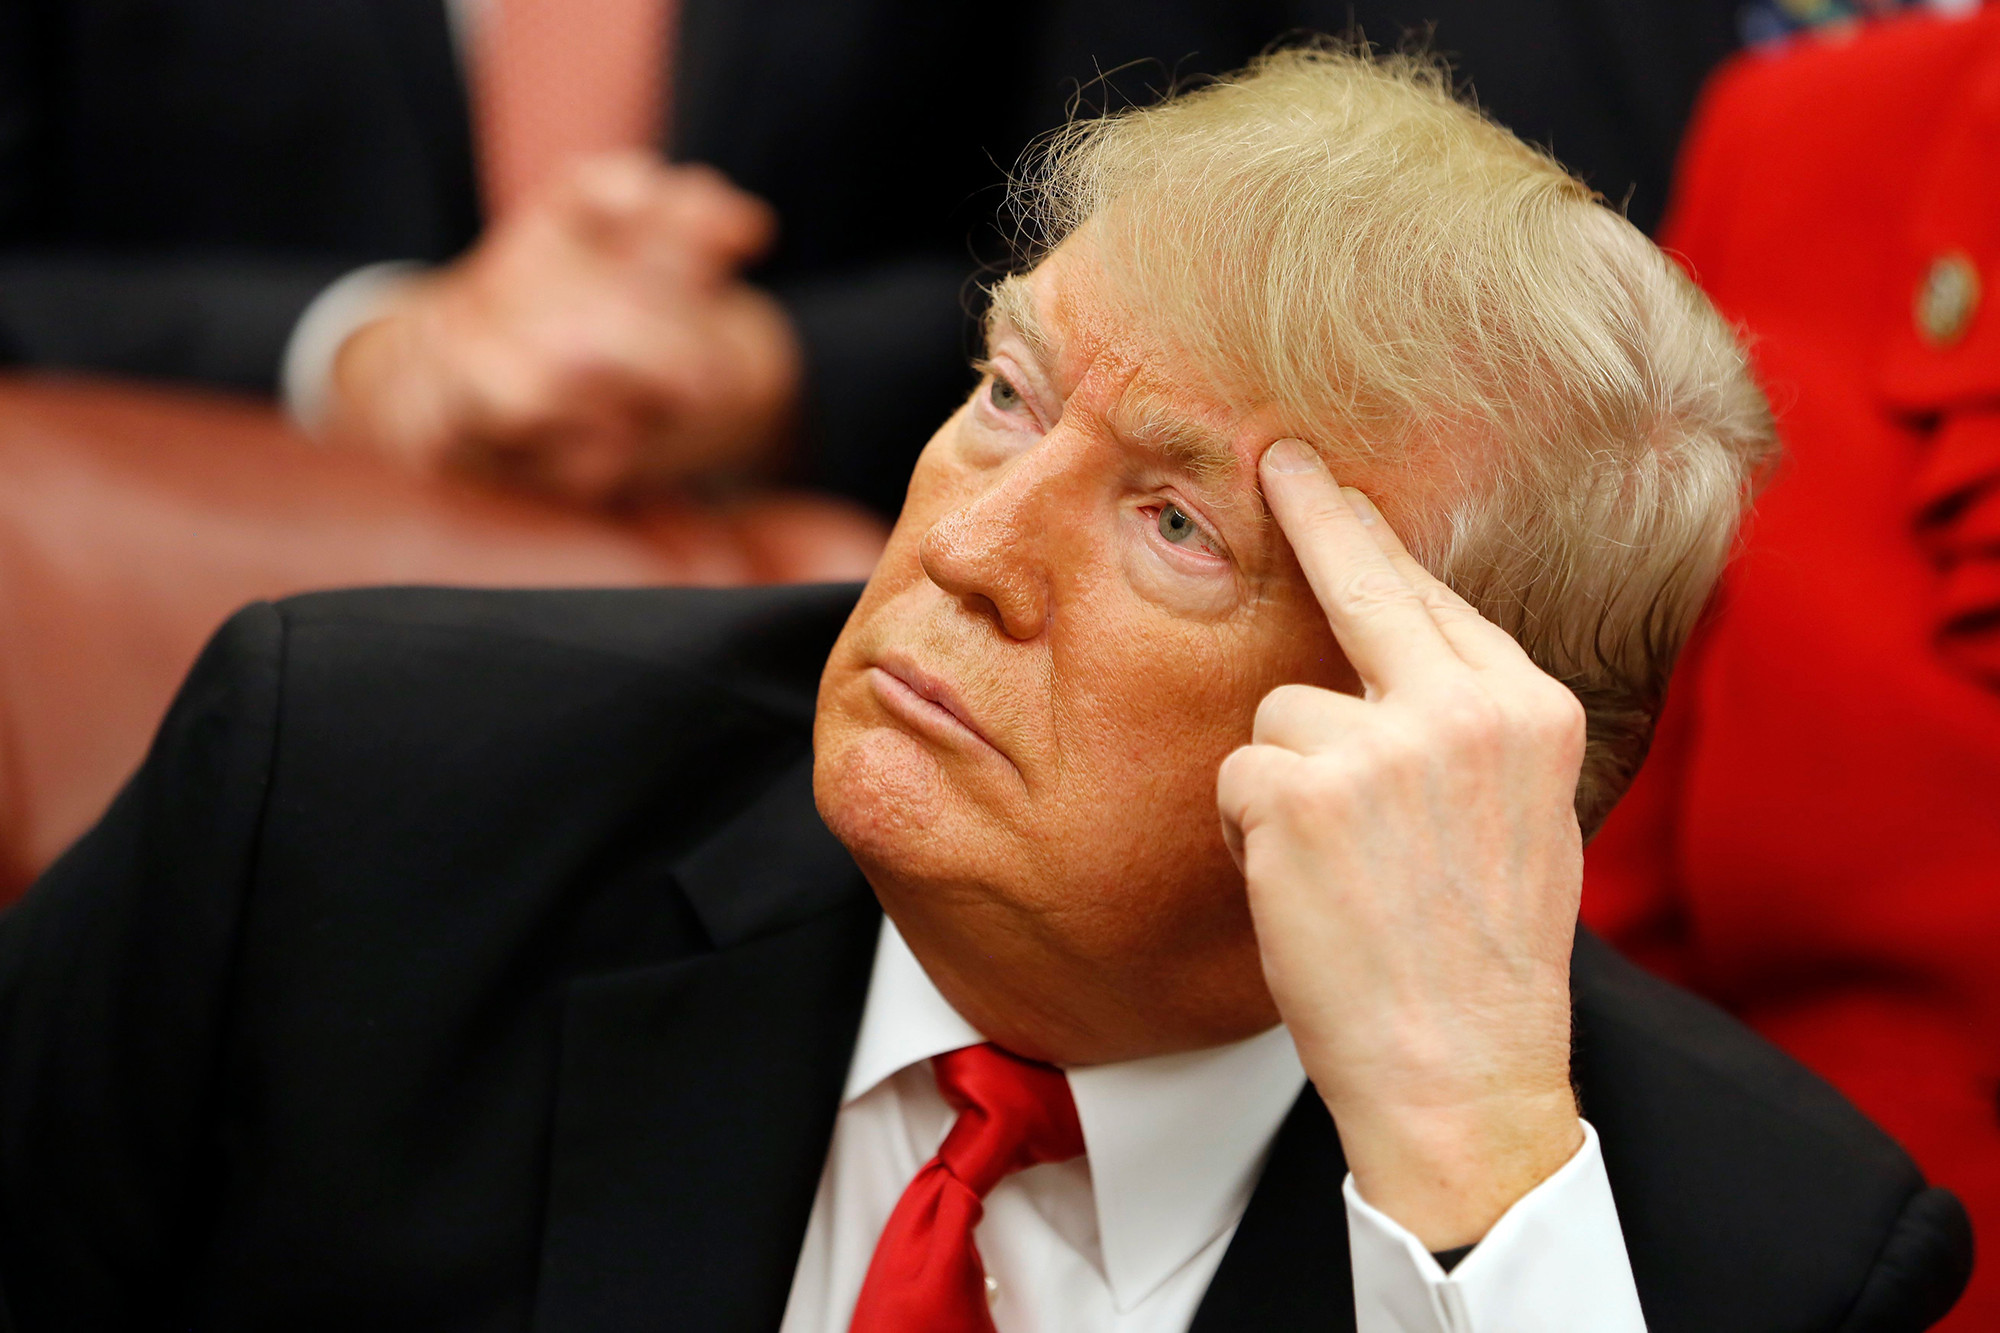 Une photo de Donald Trump, chauve et sans bronzage, fait un carton sur Twitter